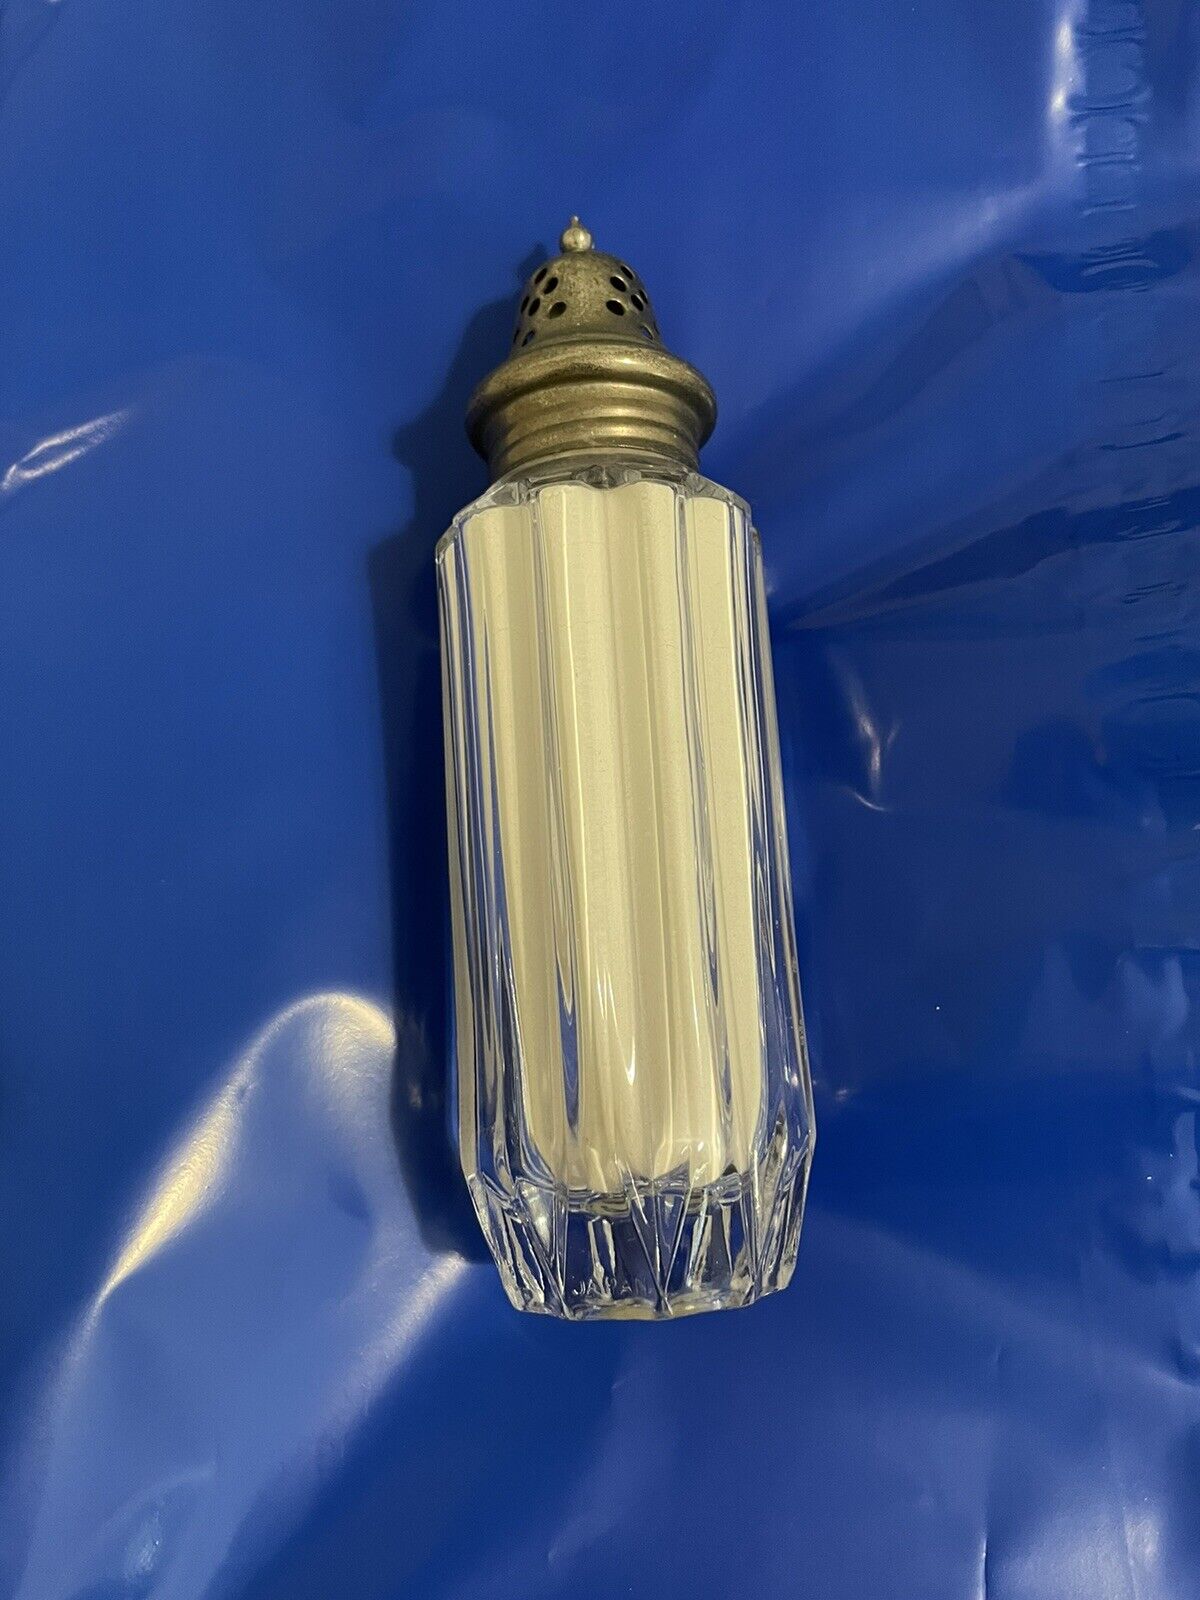 Vintage Estee Lauder Perfumed Body Powder in Glass Bottle Shaker 2.5oz FULL 